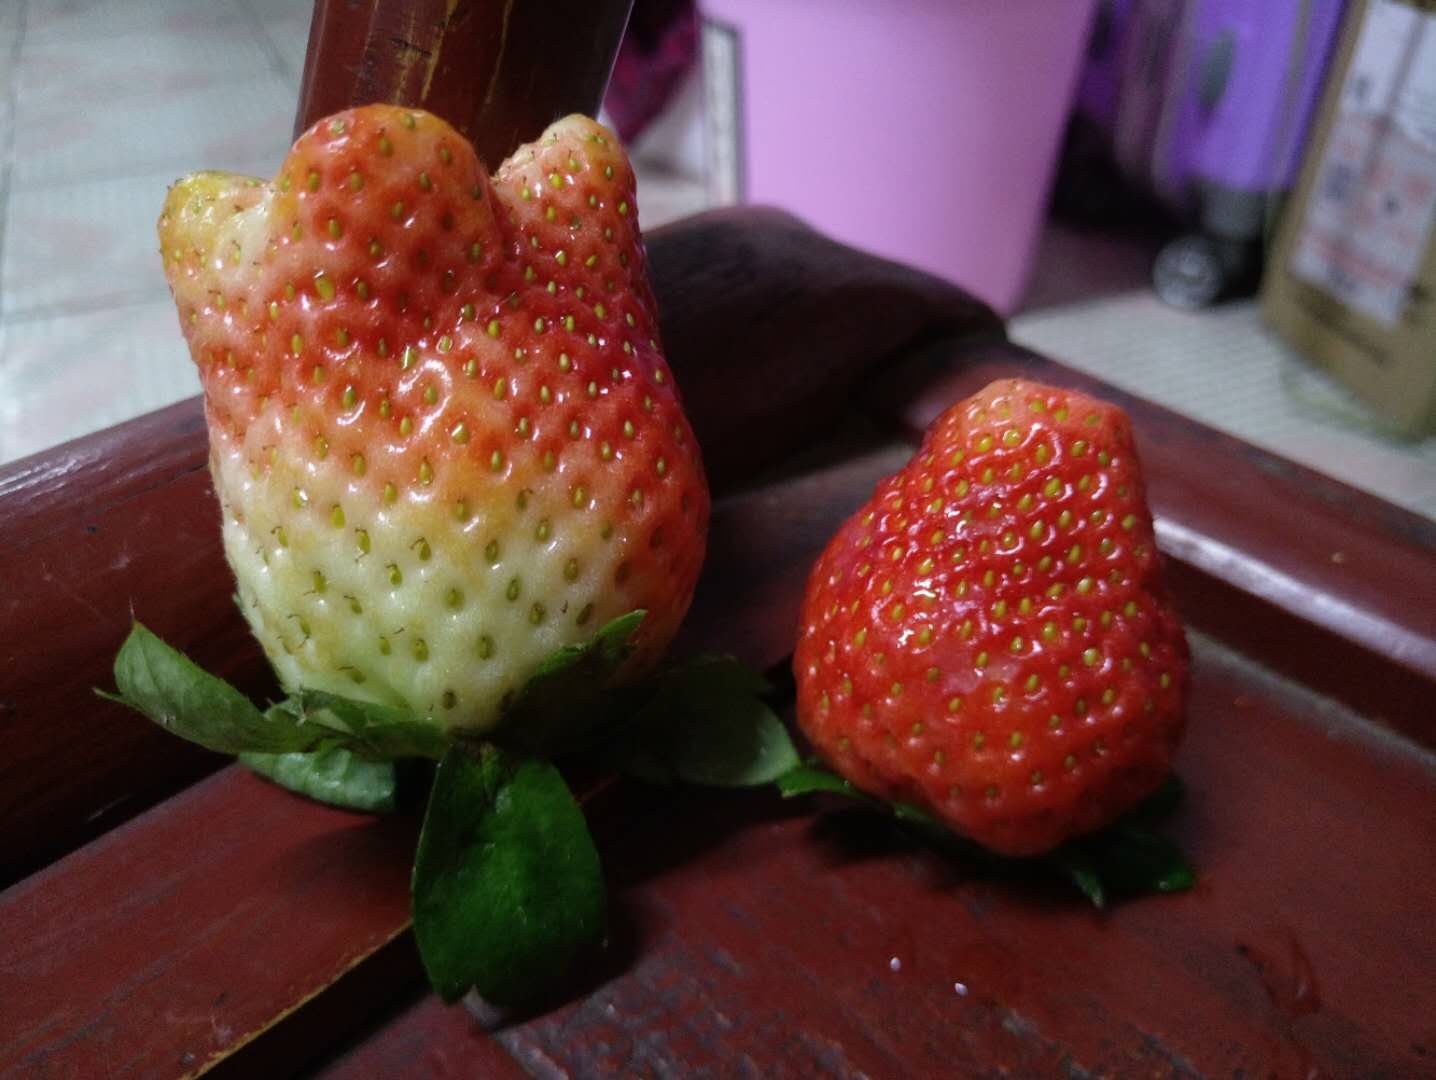 这种像花朵的草莓能吃吗?草莓棚大爷教你5招,辨别激素草莓